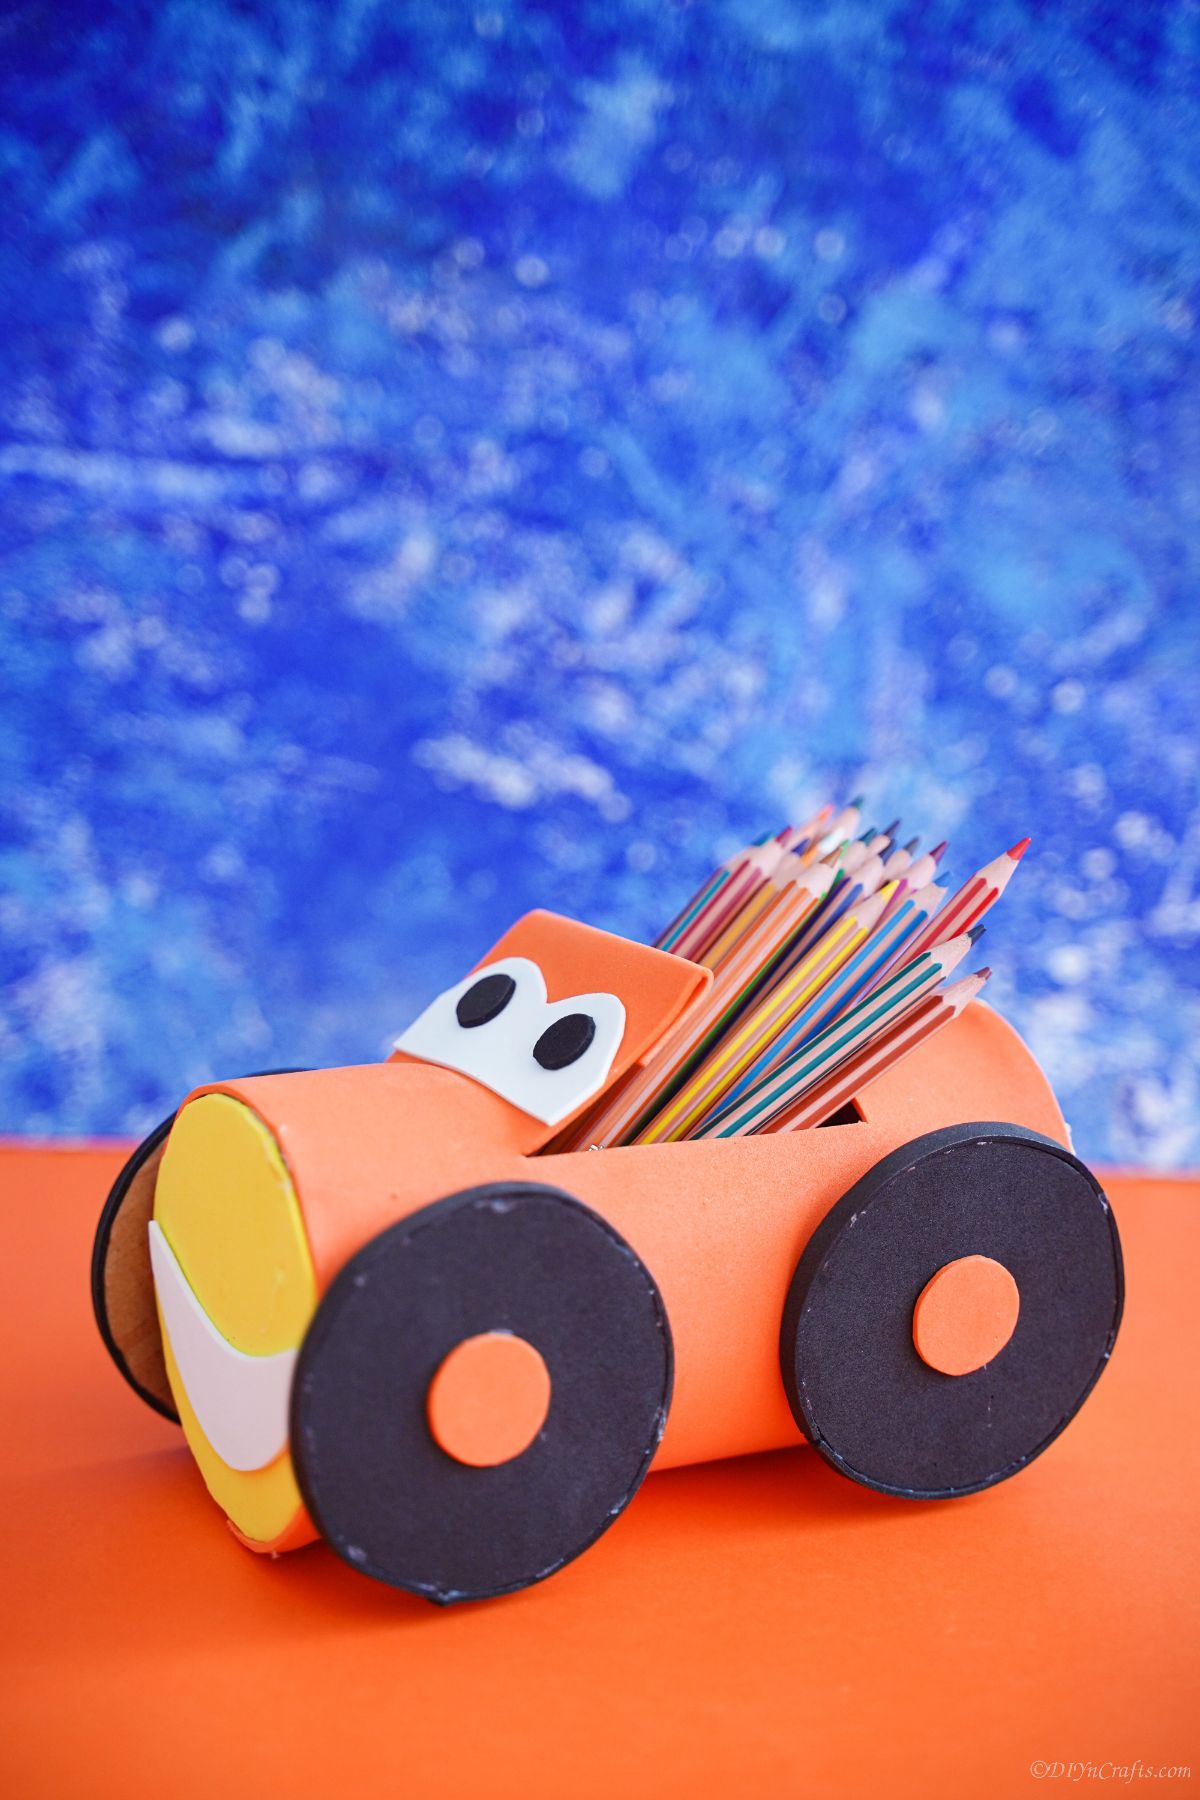 blue background behind orange plastic bottle car pencil holder